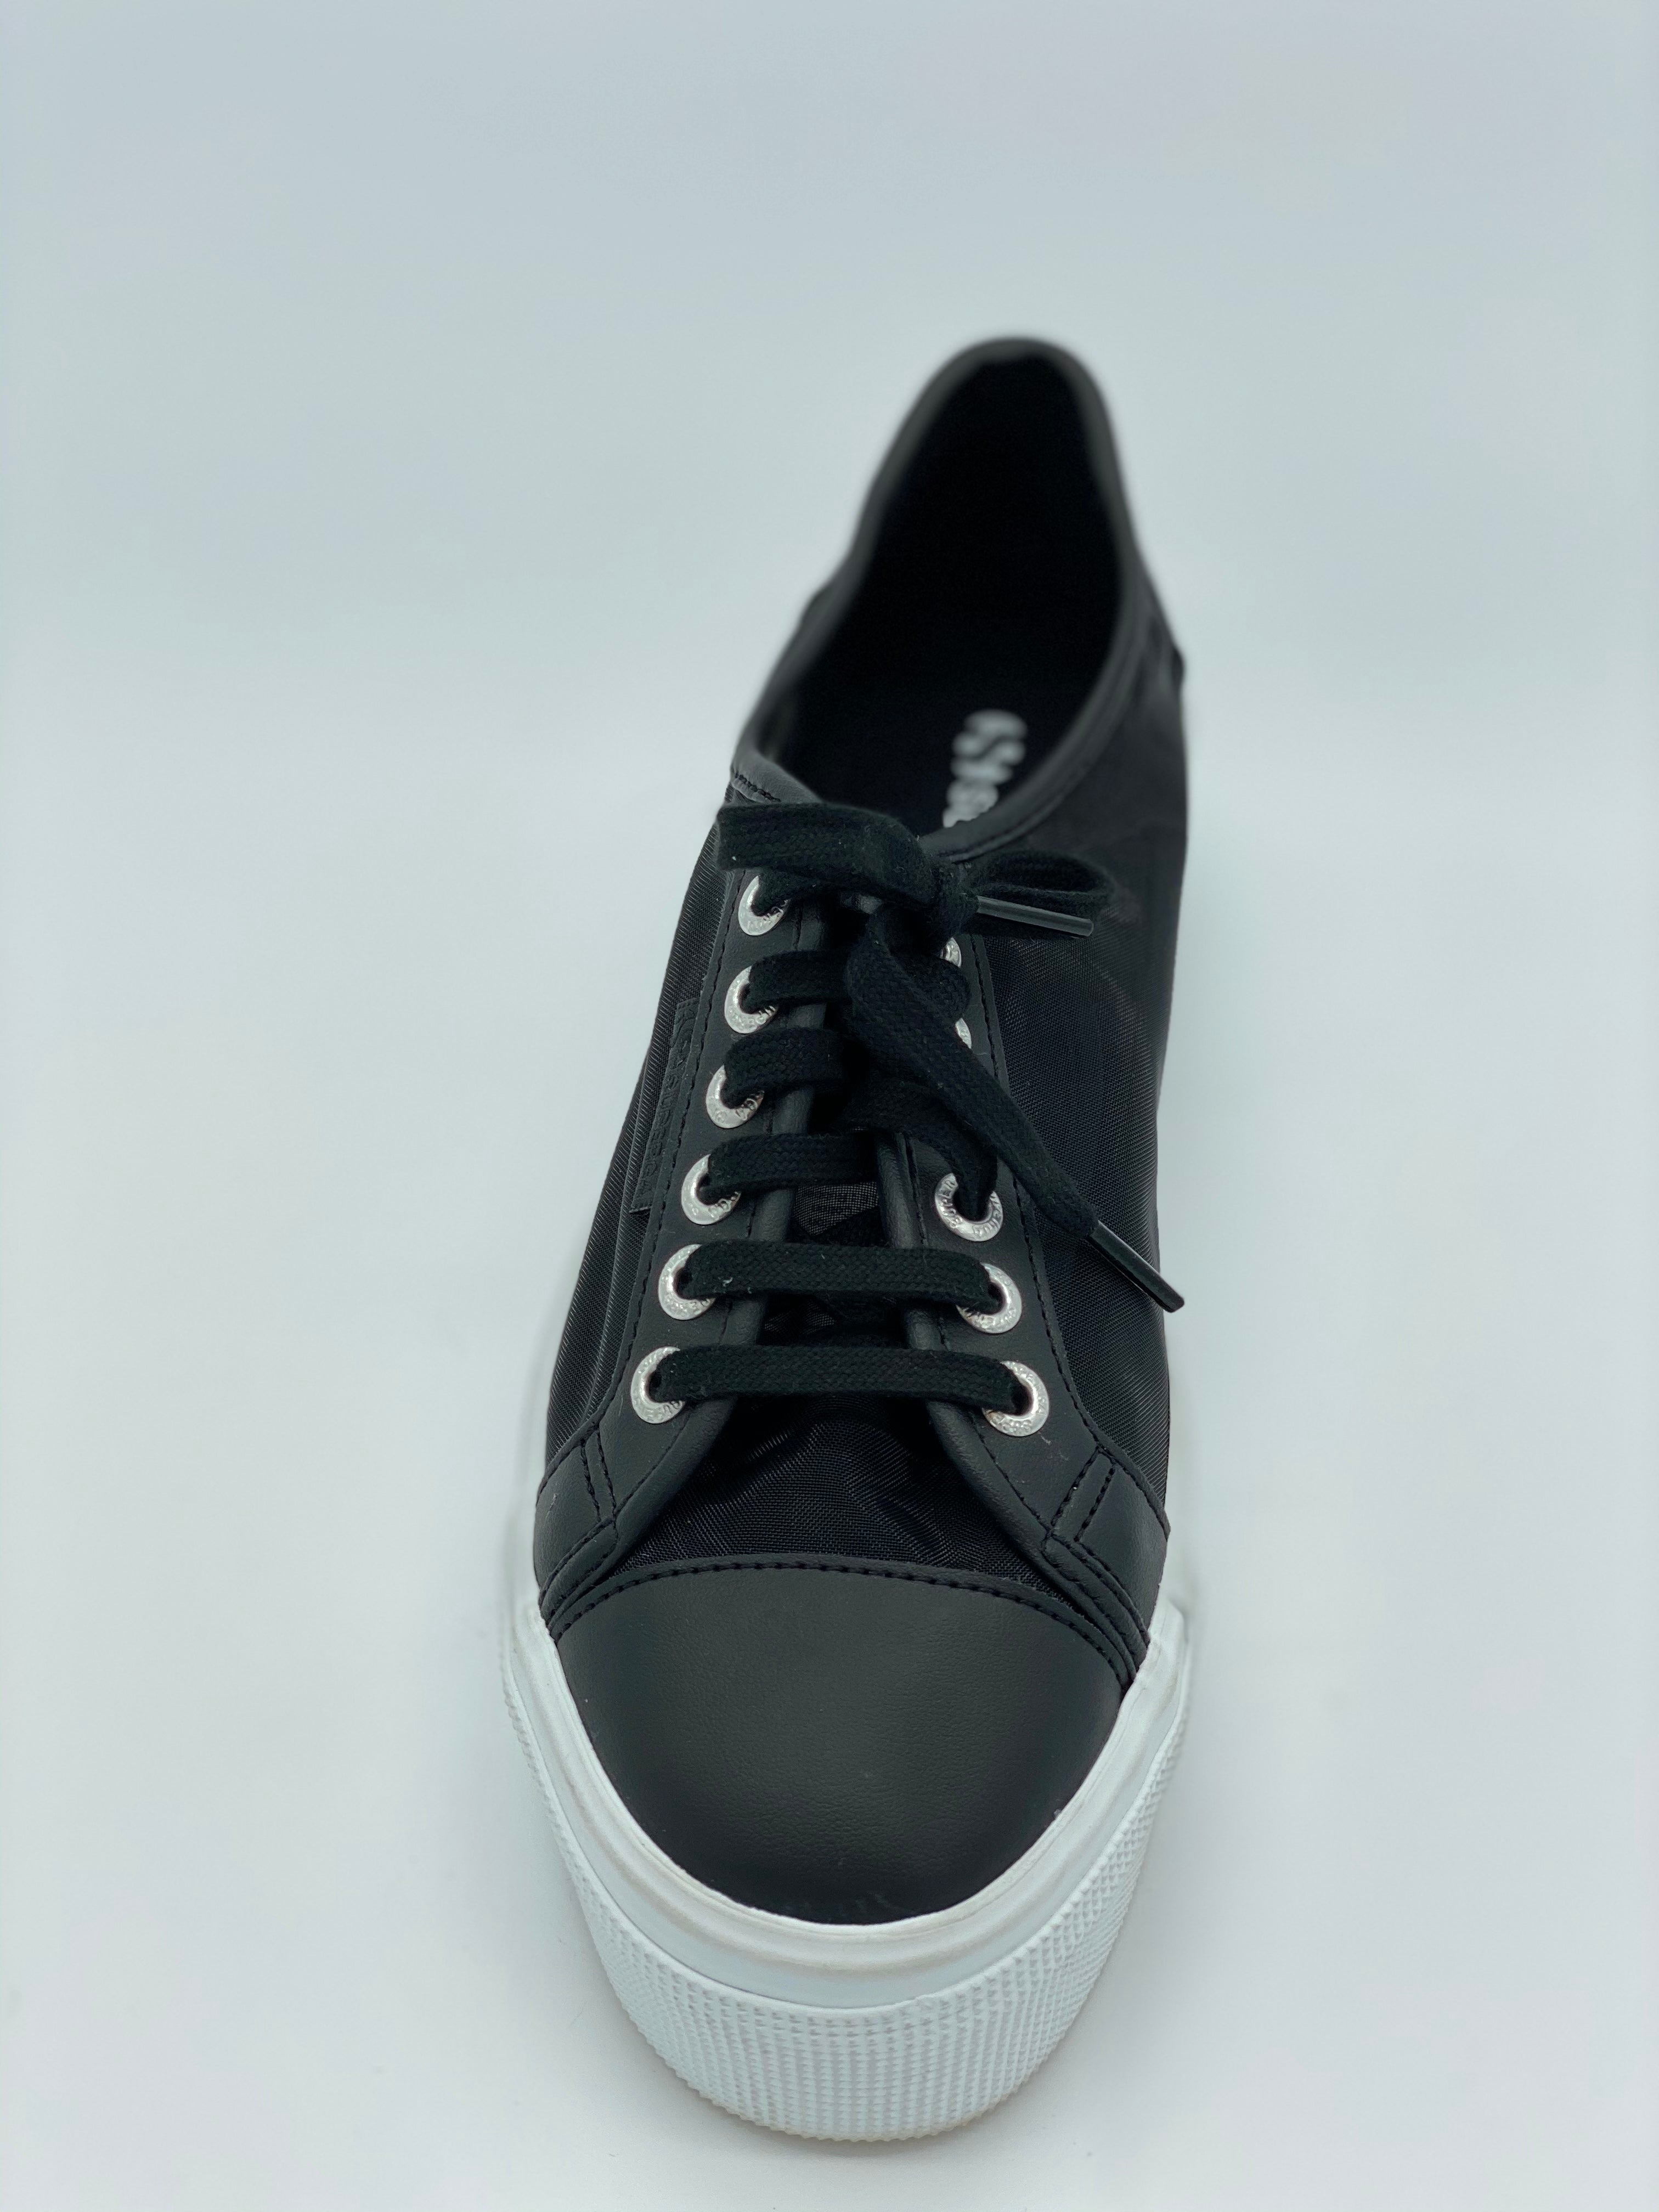 2341 Alpina Boots - Black – Superga US